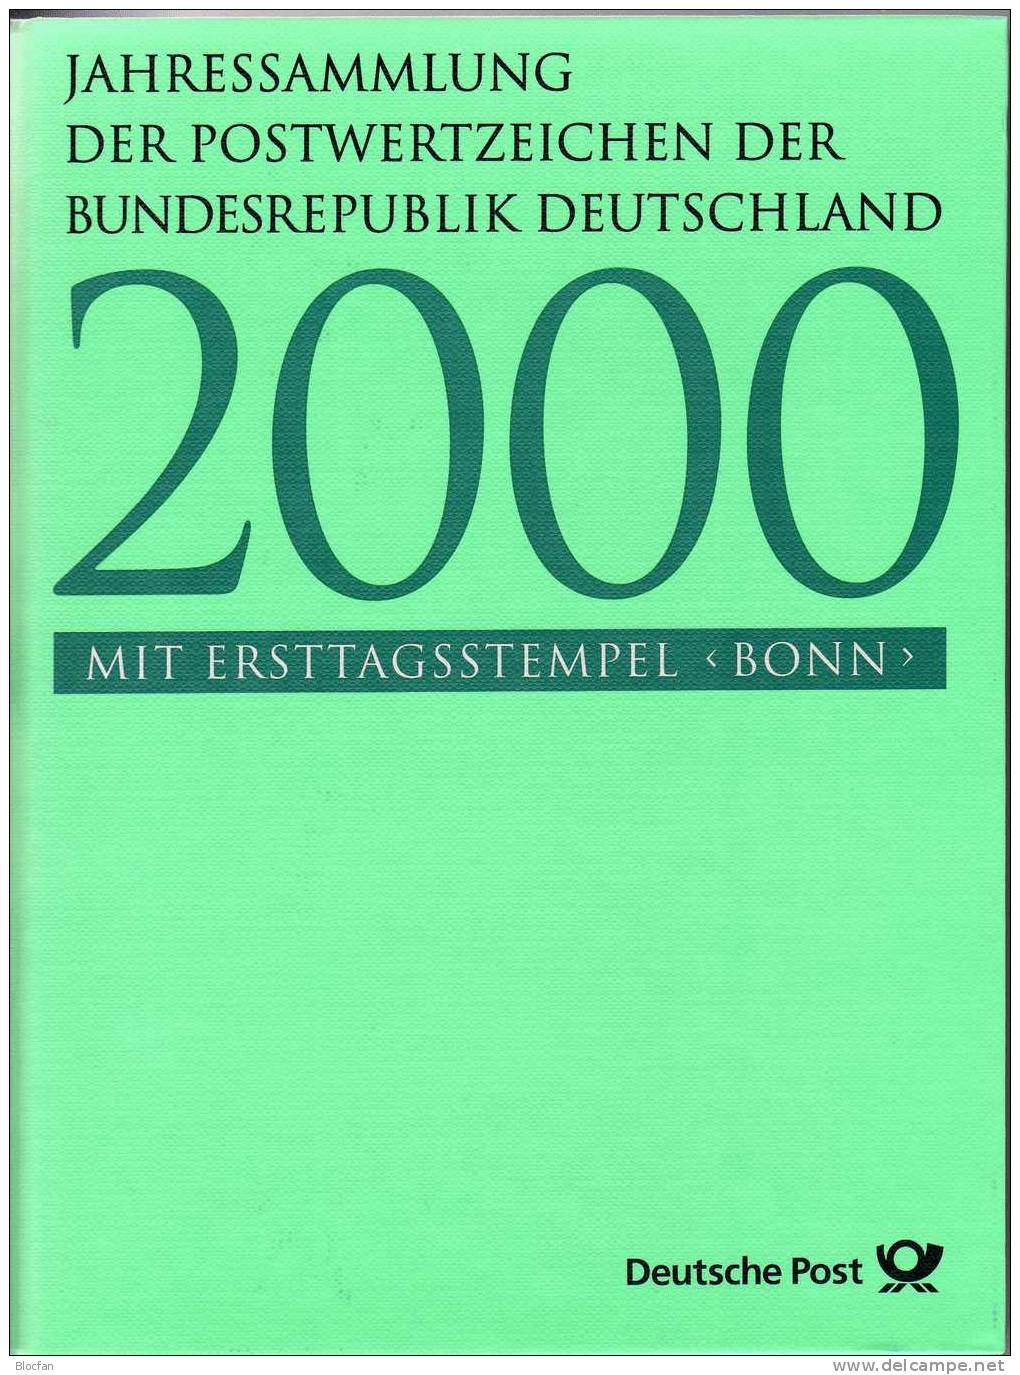 ETB-Jahressammlungen 1999 bis 2001 BRD SST 390€ je als Buch komplett